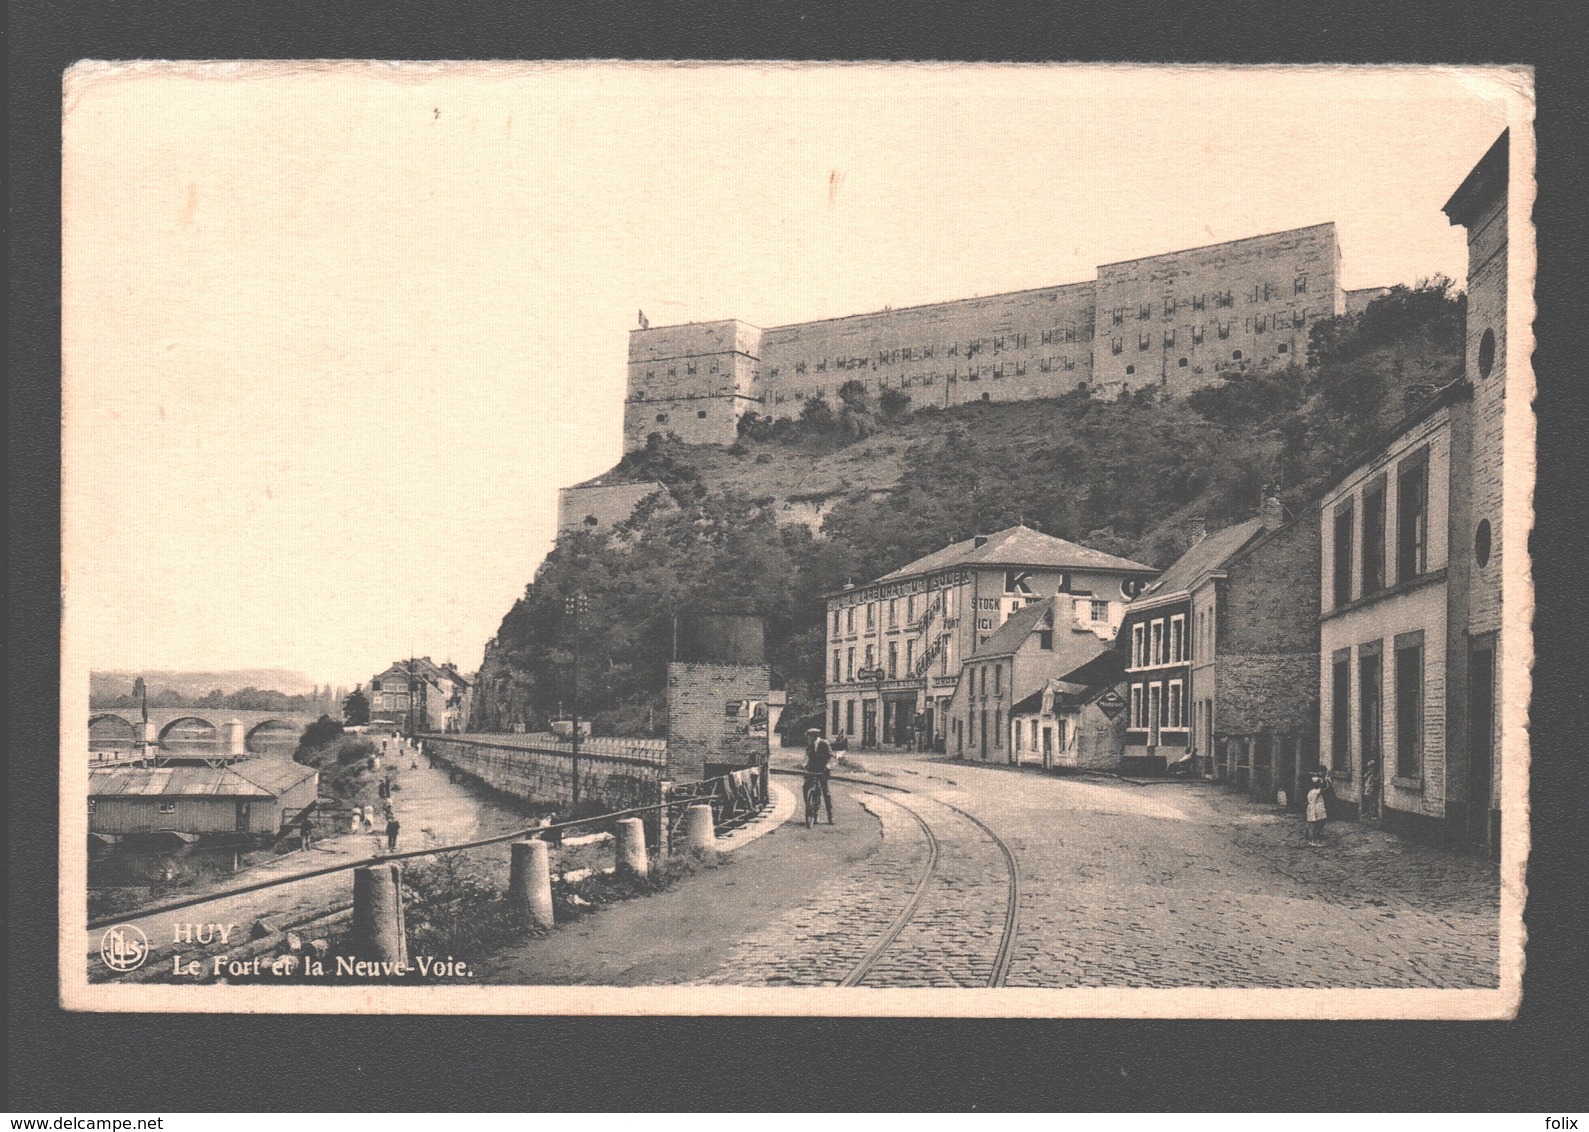 Huy - Le Fort Et La Neuve-Voie - éd. Vve Jean Laffut, Confiserie, Huy - Huy